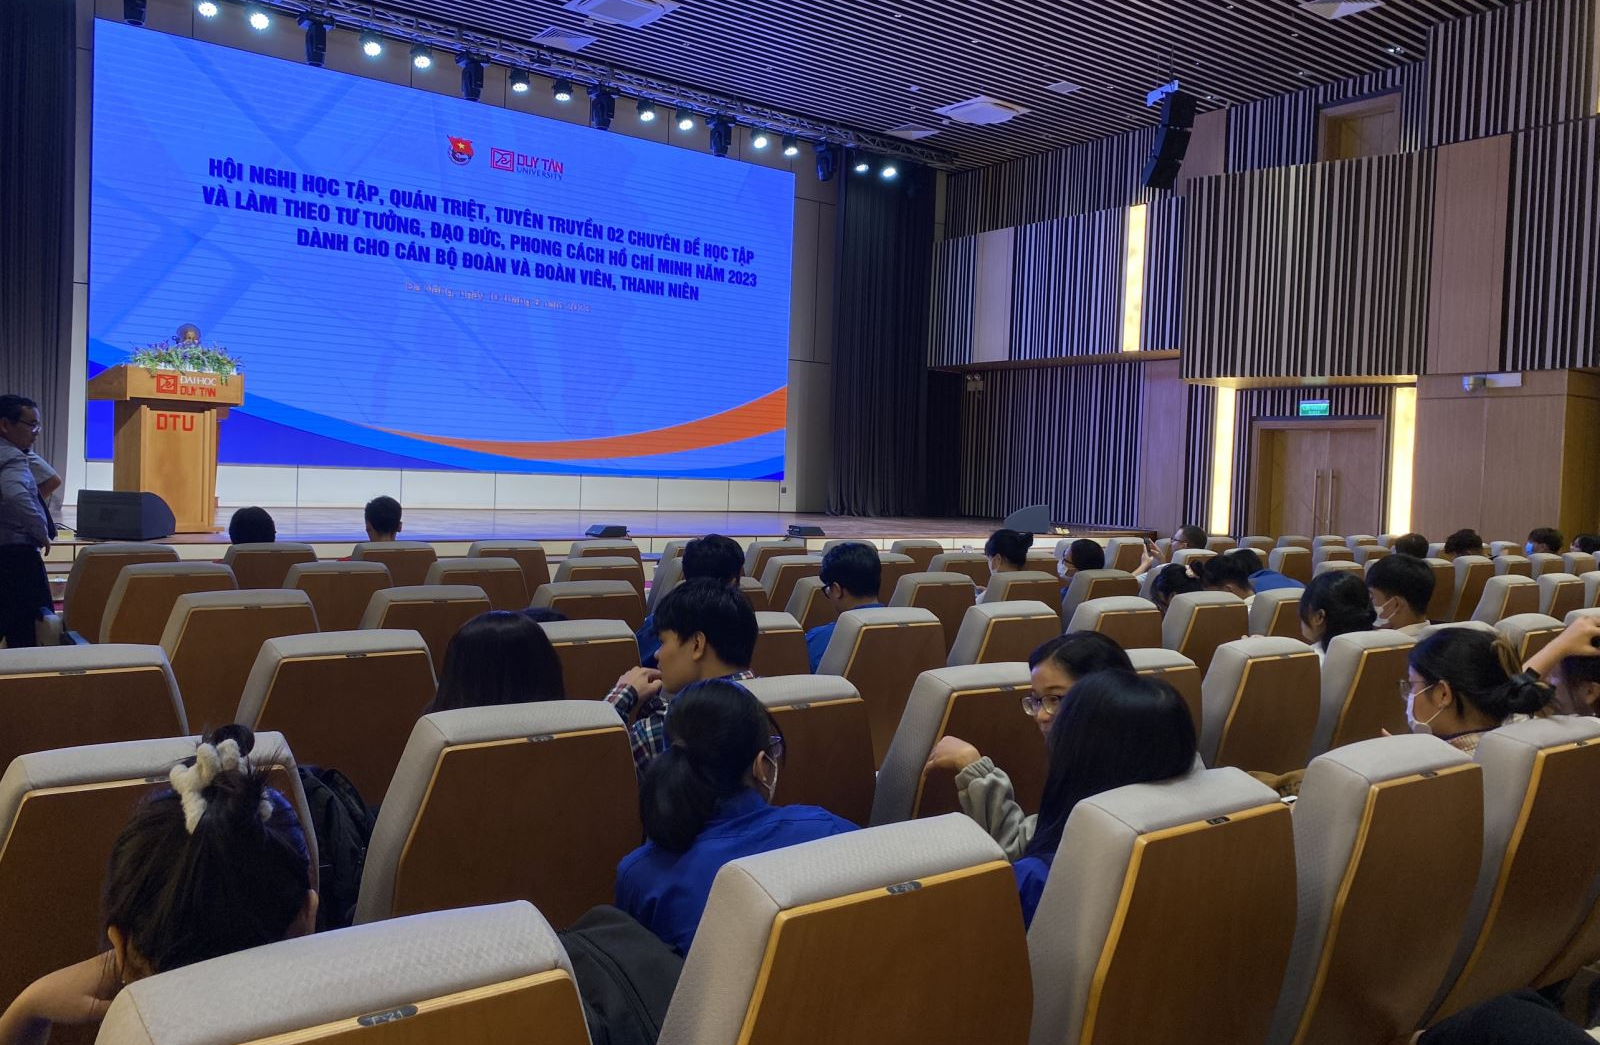 Hội nghị học tập, quán triệt, tuyên truyền 02 chuyên đề học tập và làm theo tư tưởng, đạo đức, phong cách Hồ Chí Minh năm 2023 dành cho cán bộ đoàn và đoàn viên, thanh niên